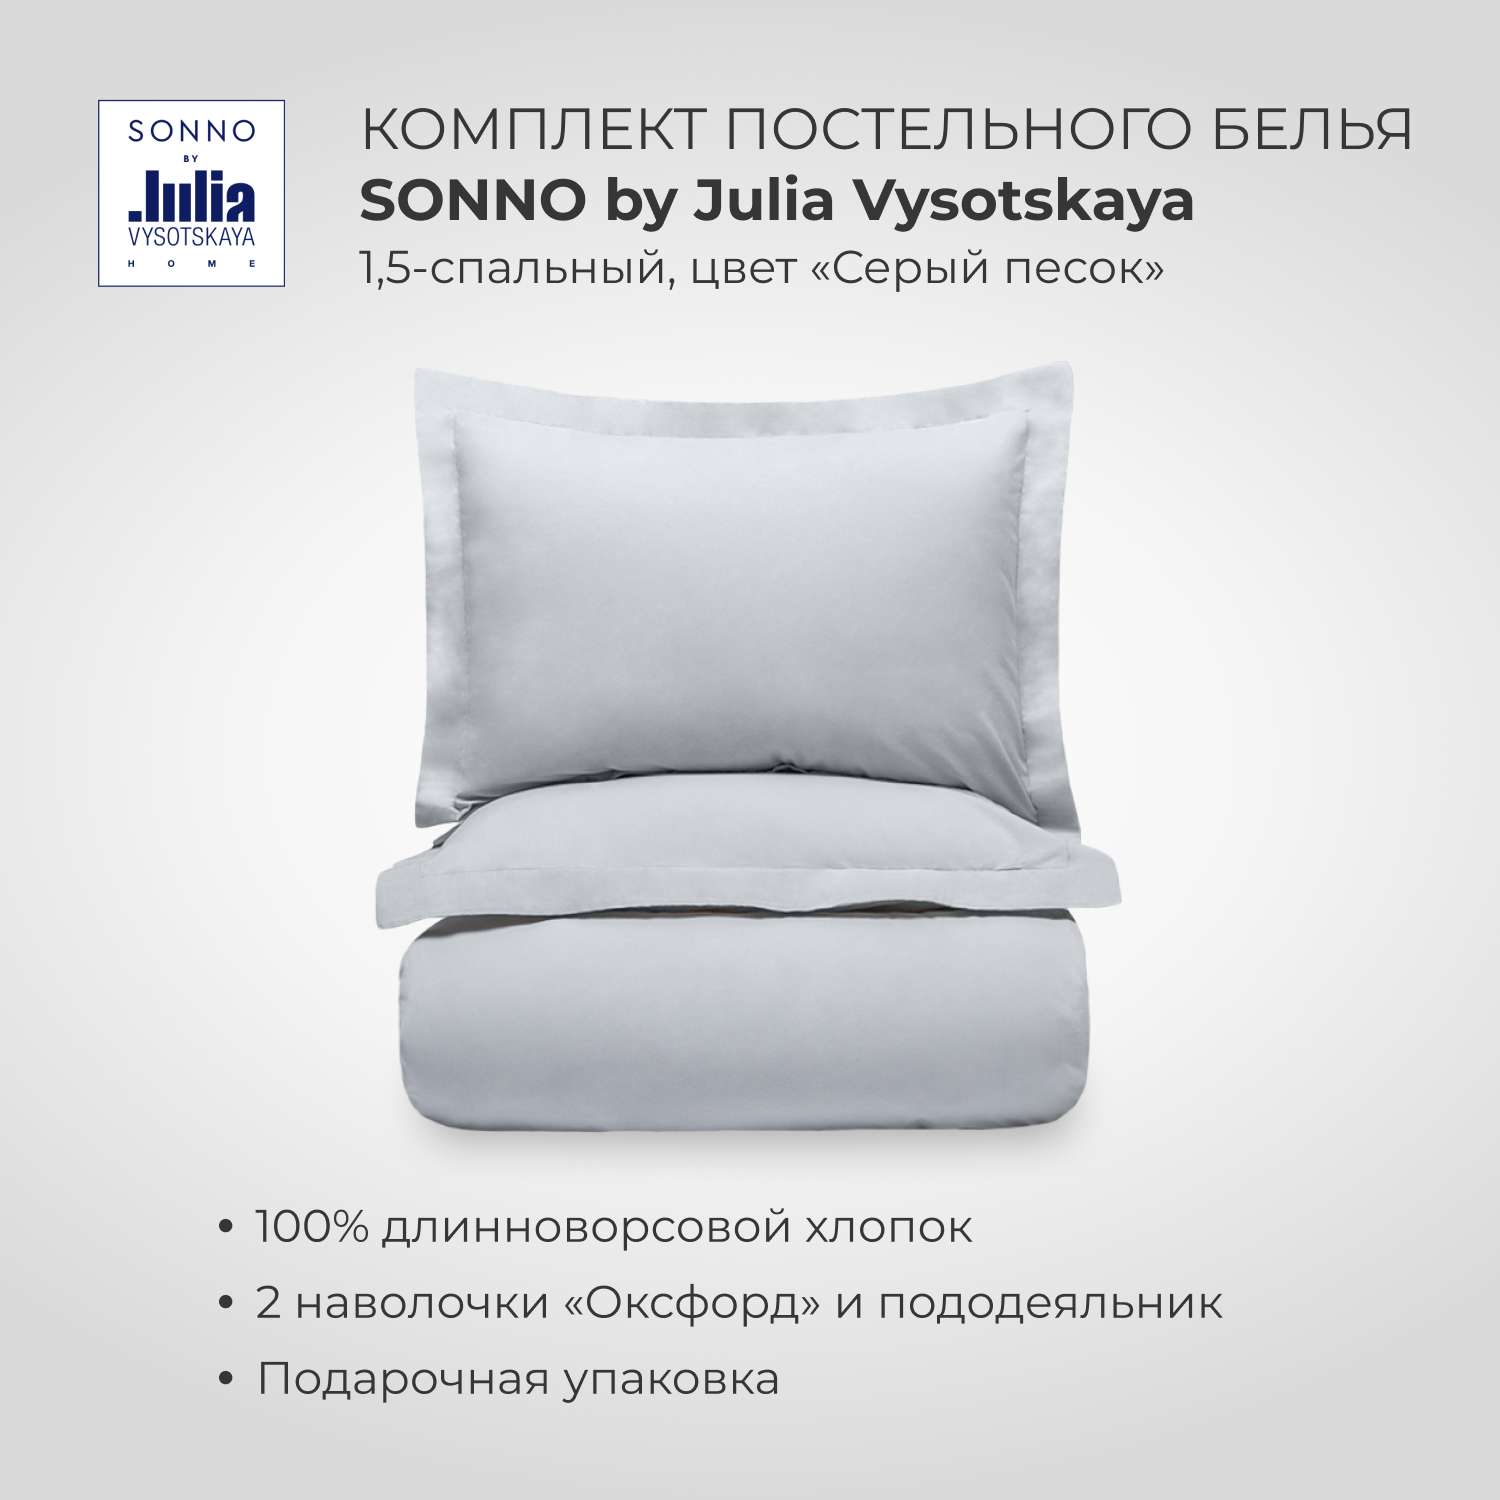 Комплект постельного белья SONNO by Julia Vysotskaya 1.5-спальныйЦвет Серый песок - фото 1